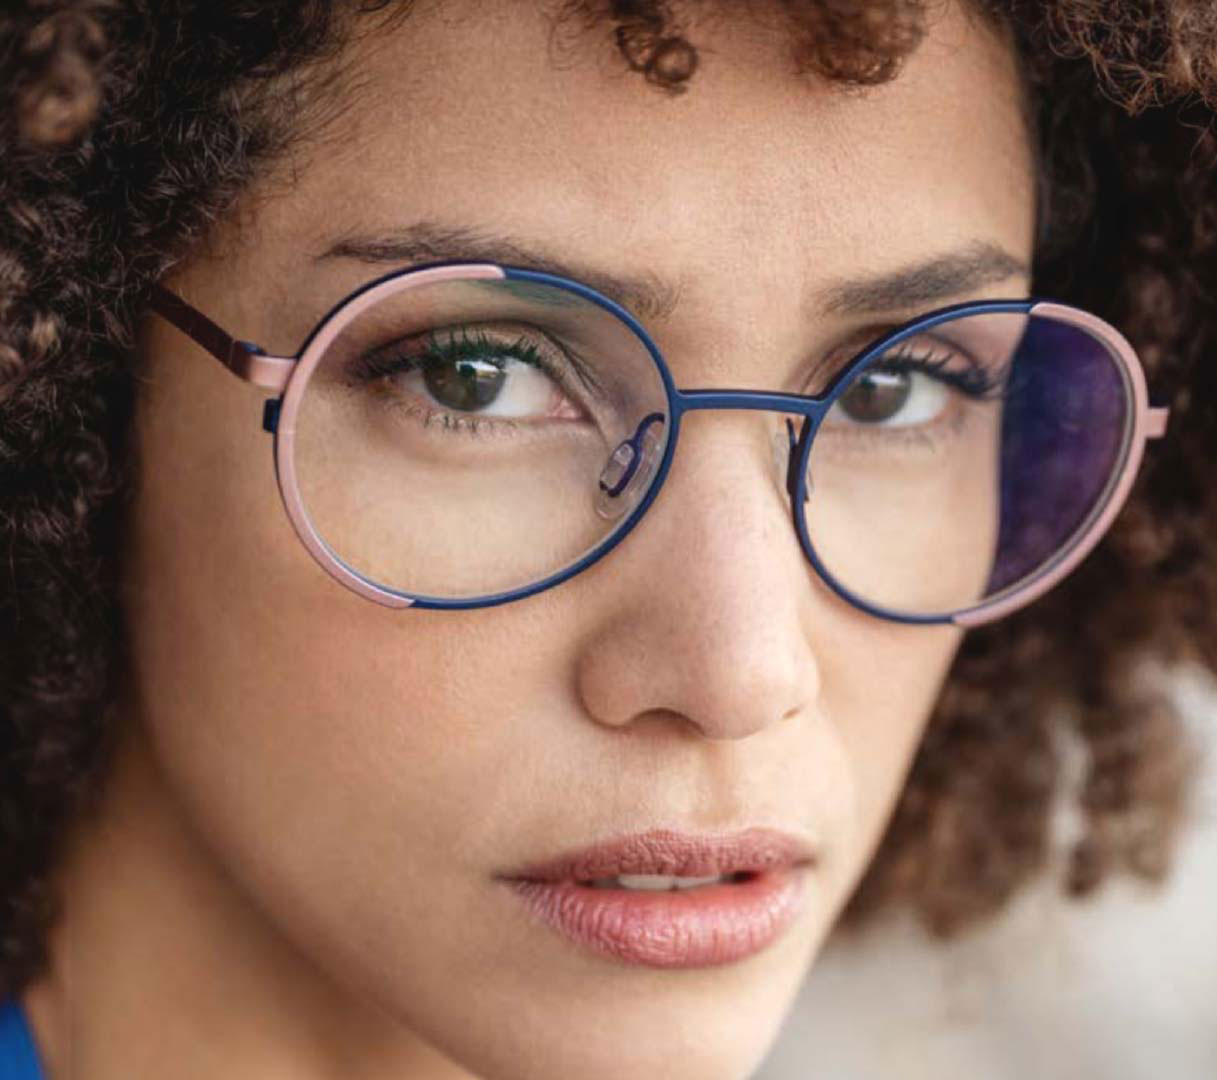 Brillen für perfektes Sehen und gutes Aussehen. Kontaktlinsen, die unsichtbare Brillenalternative. Umfangreicher Service rund um die Brille. Willkommen bei der Truderinger Sehhaus Betriebs GmbH.